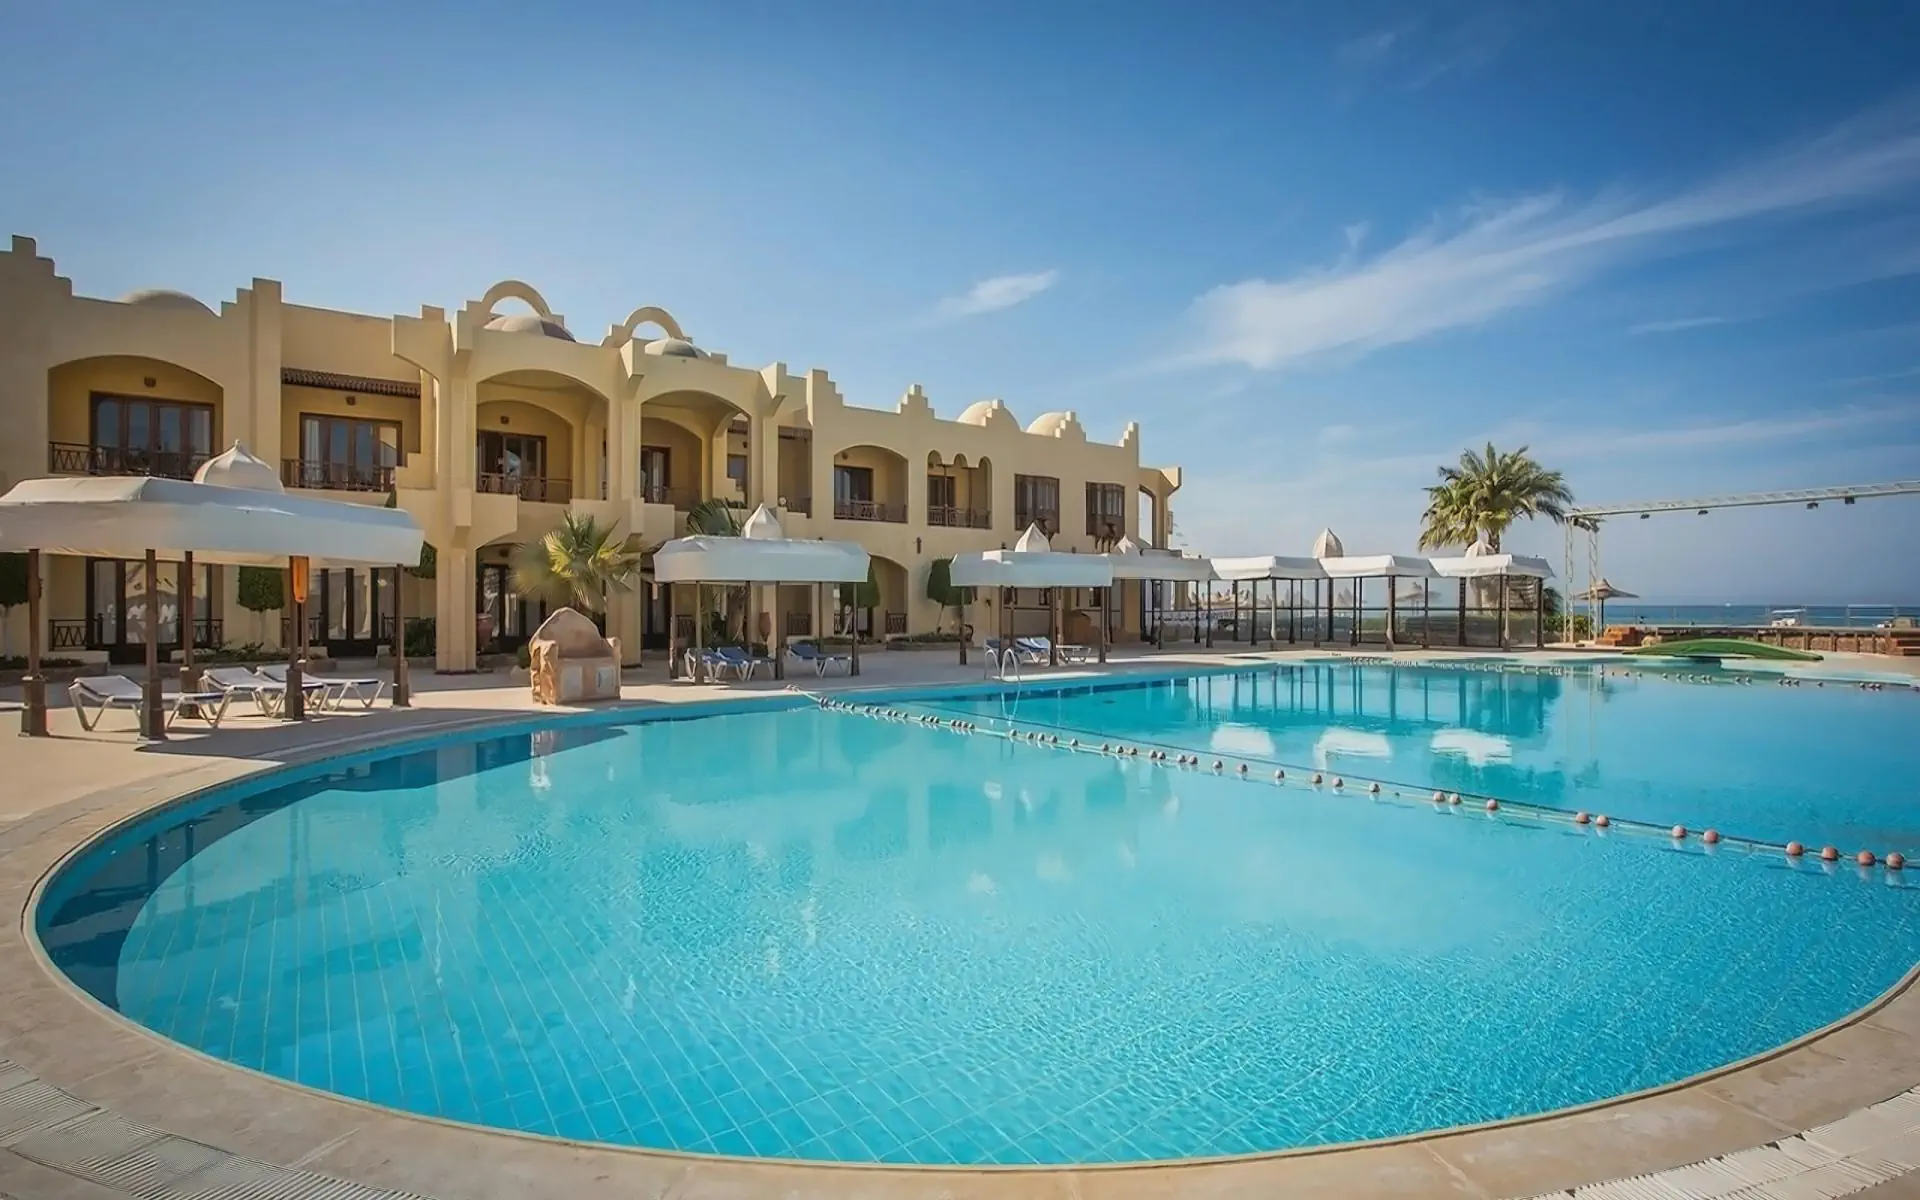 Egipt Hurghada Hurghada Sunny Days Resort Spa & Aqua Park ( ex. El Palacio & Palma de Mirette)